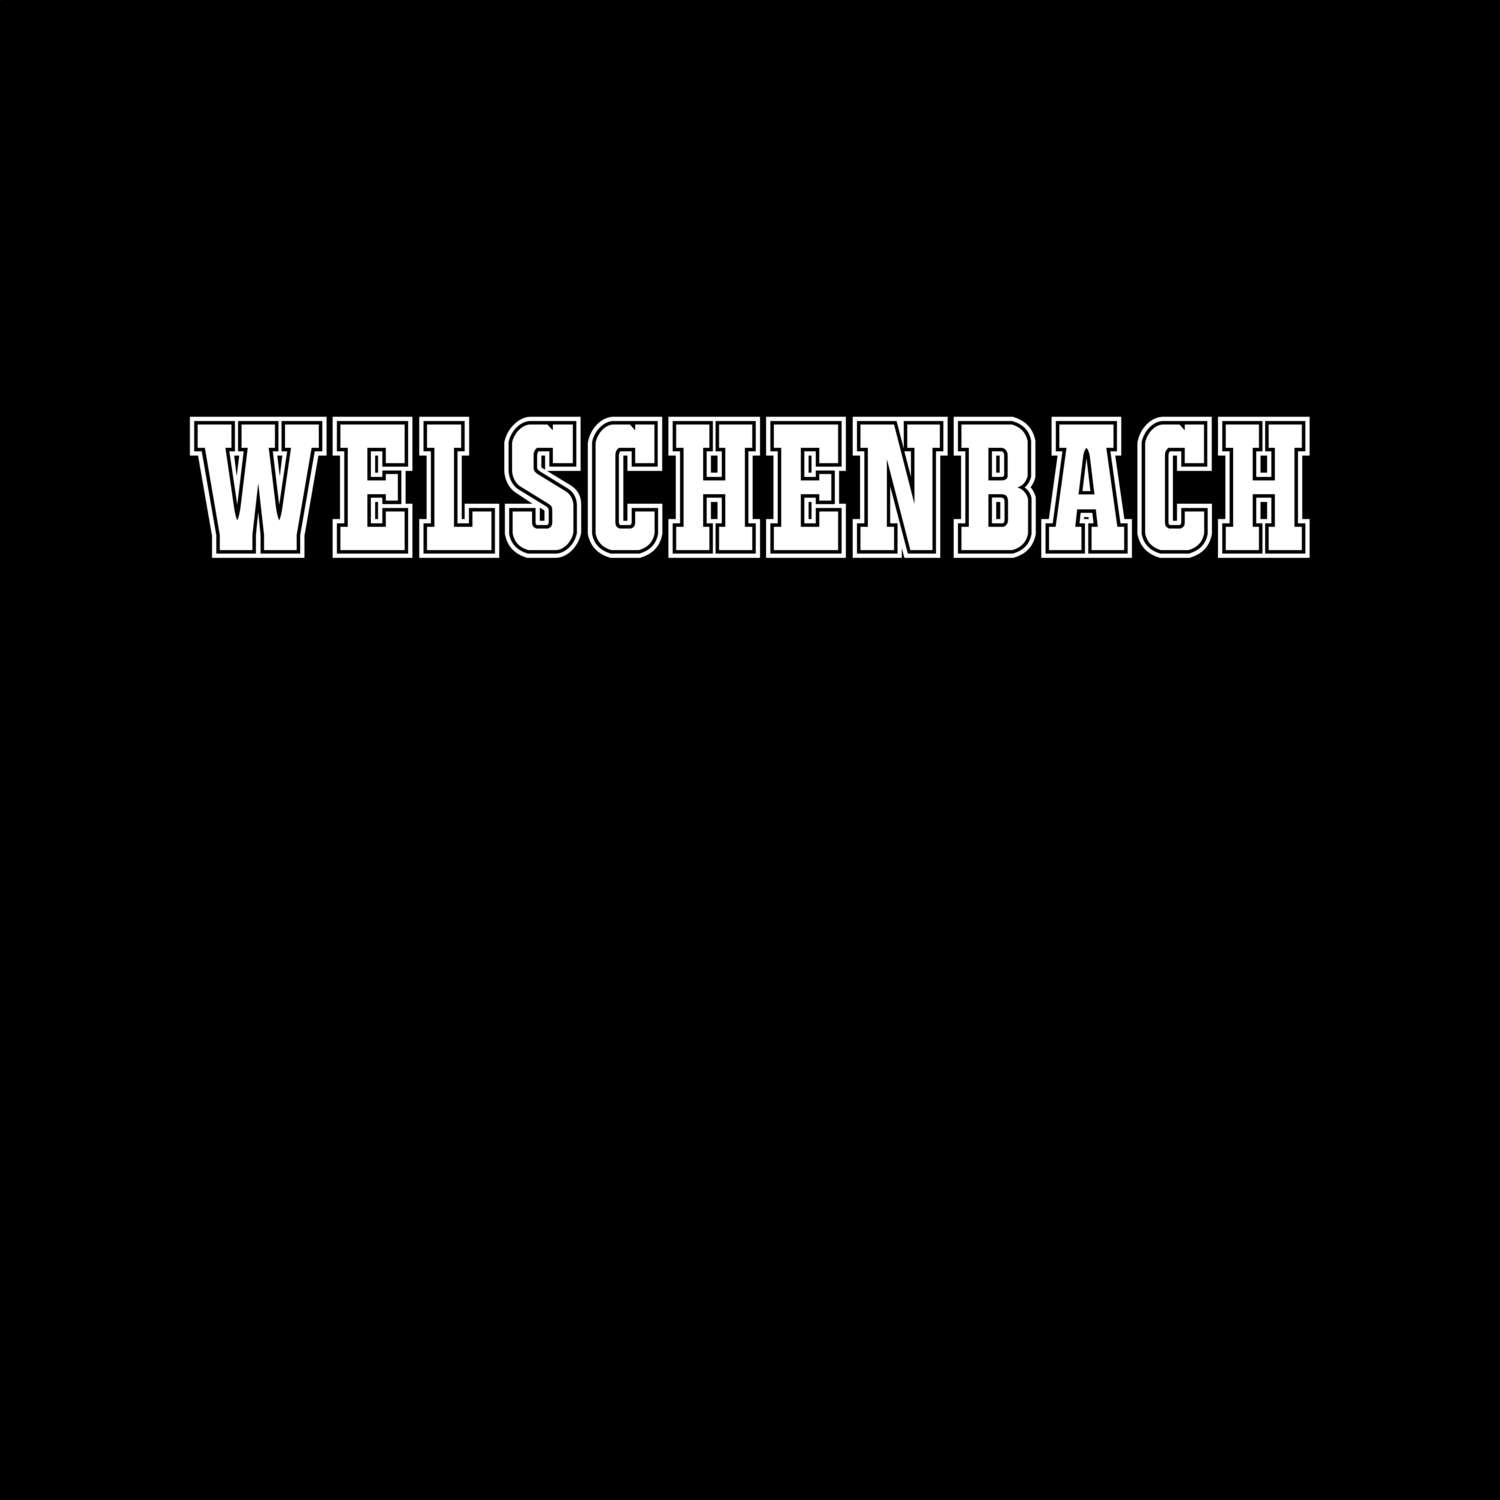 Welschenbach T-Shirt »Classic«